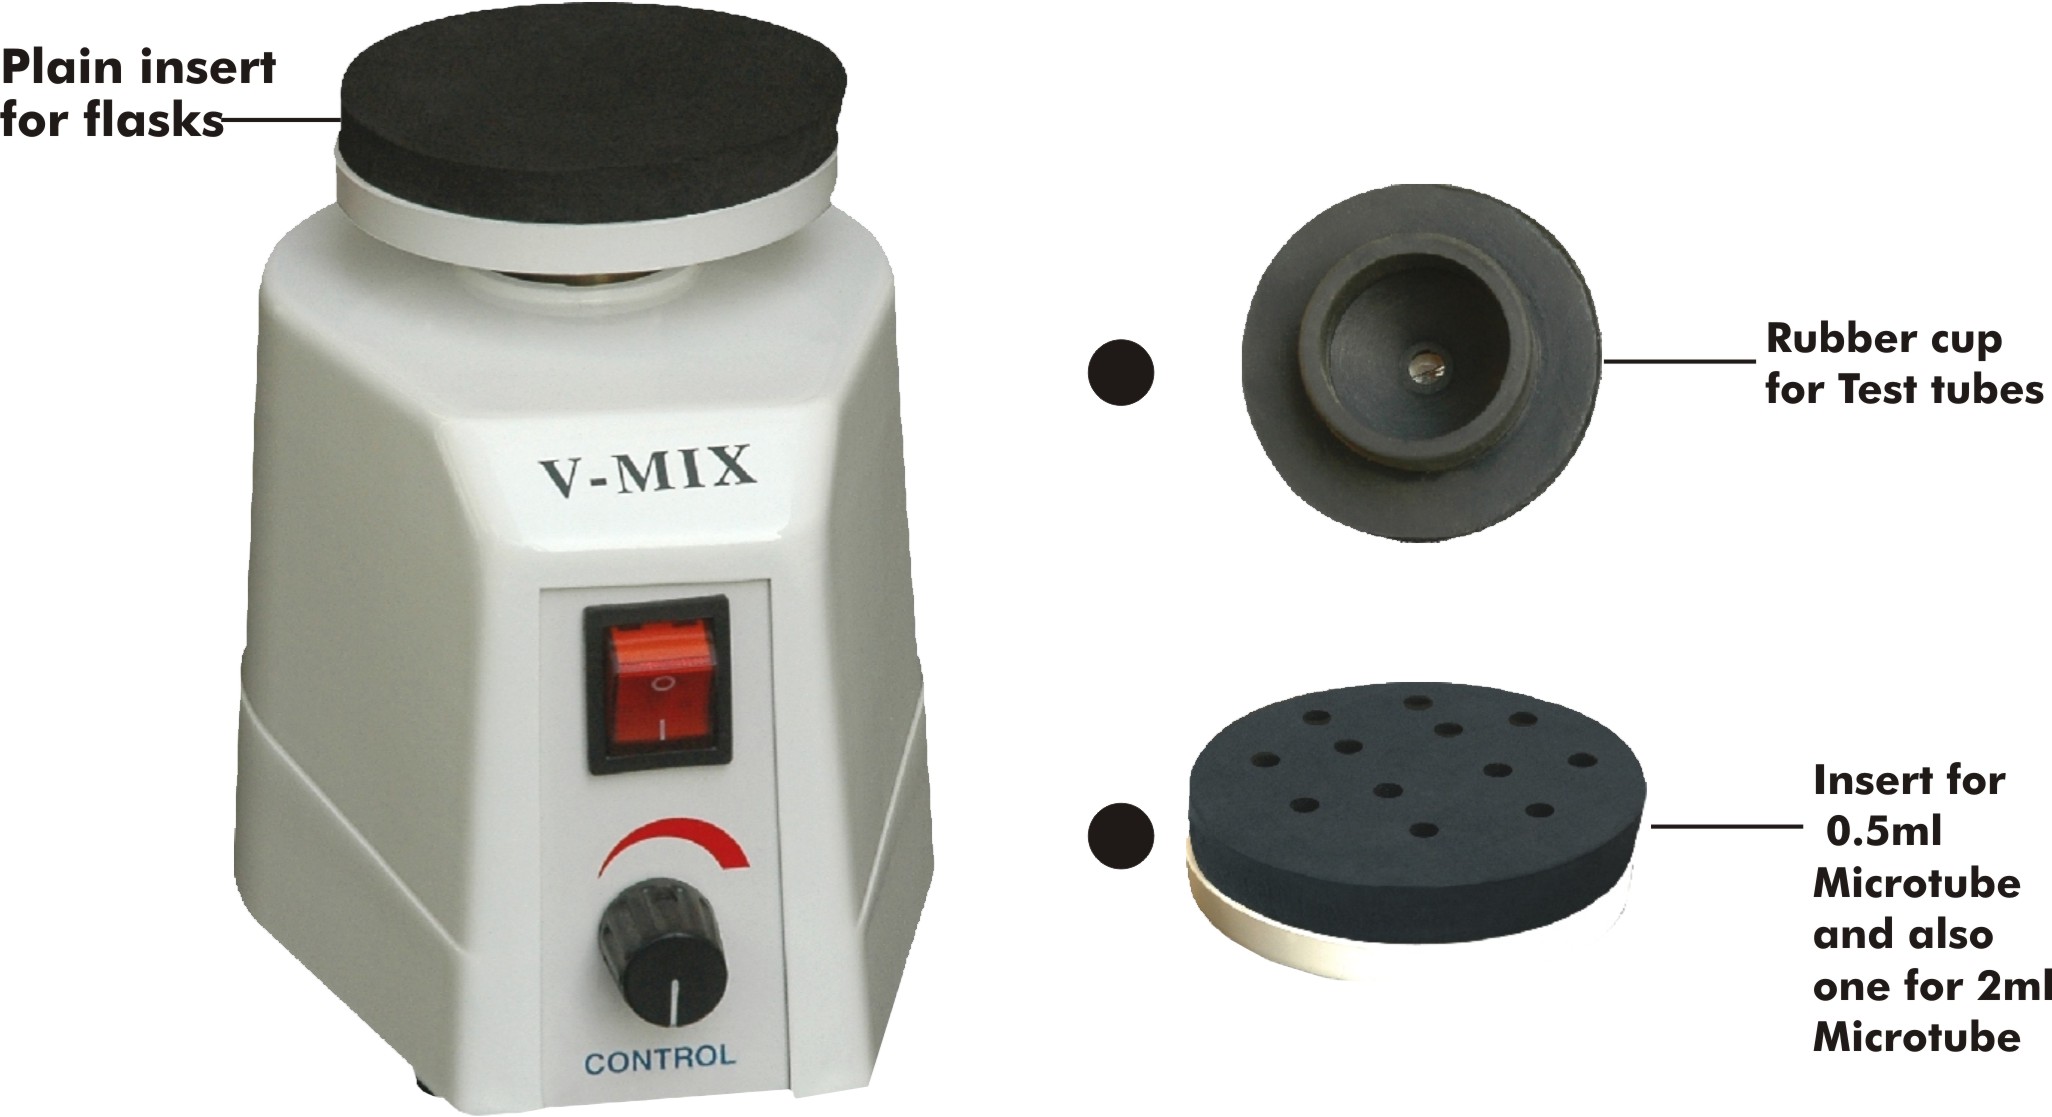  Vortex Shaker, Model No.: KI- VM- 20